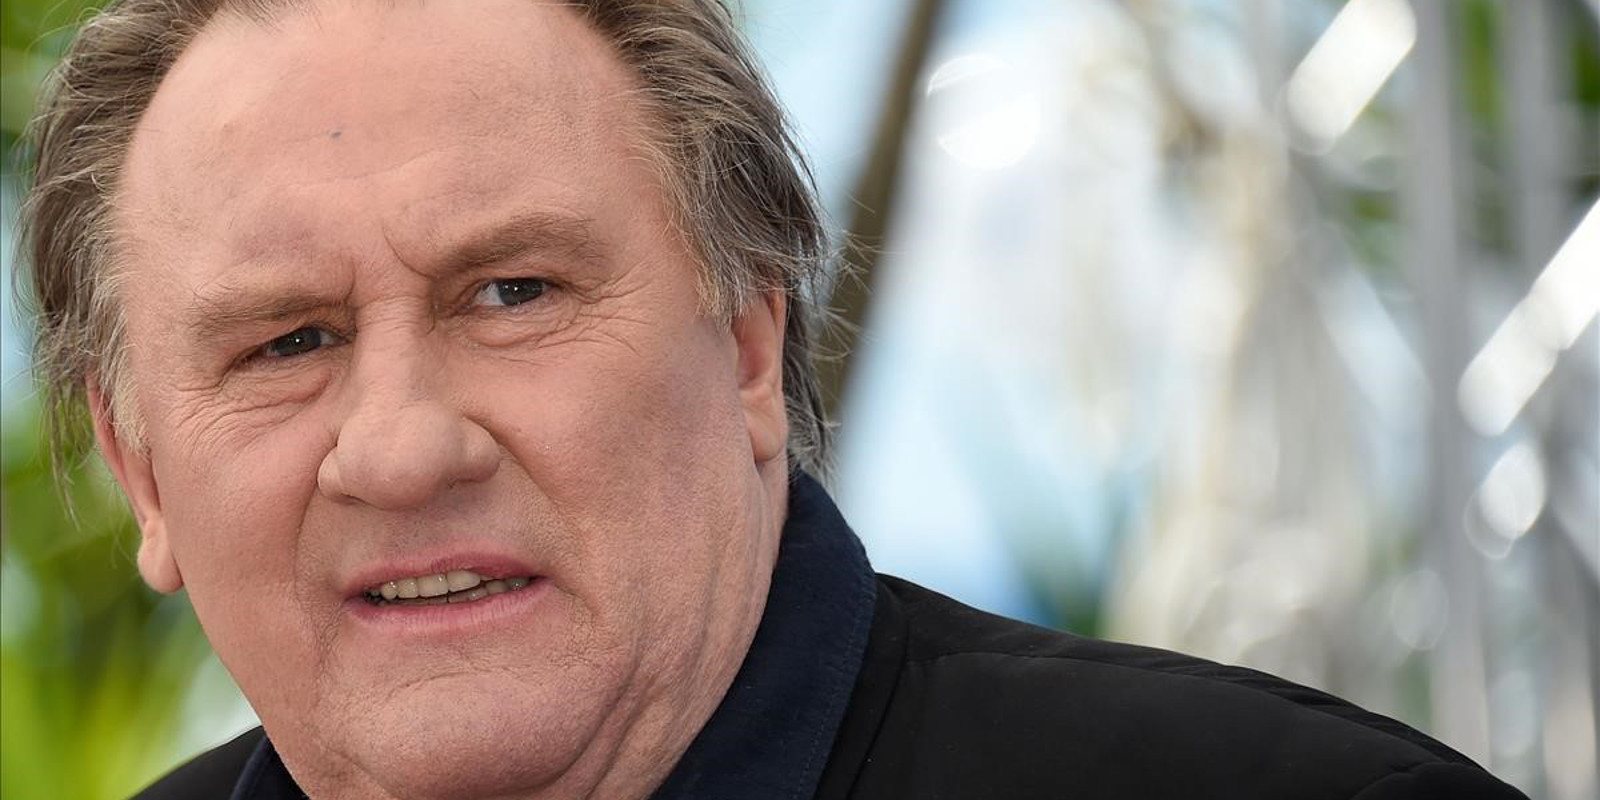 El actor Gérard Depardieu ha sido acusado de agresión sexual y violación